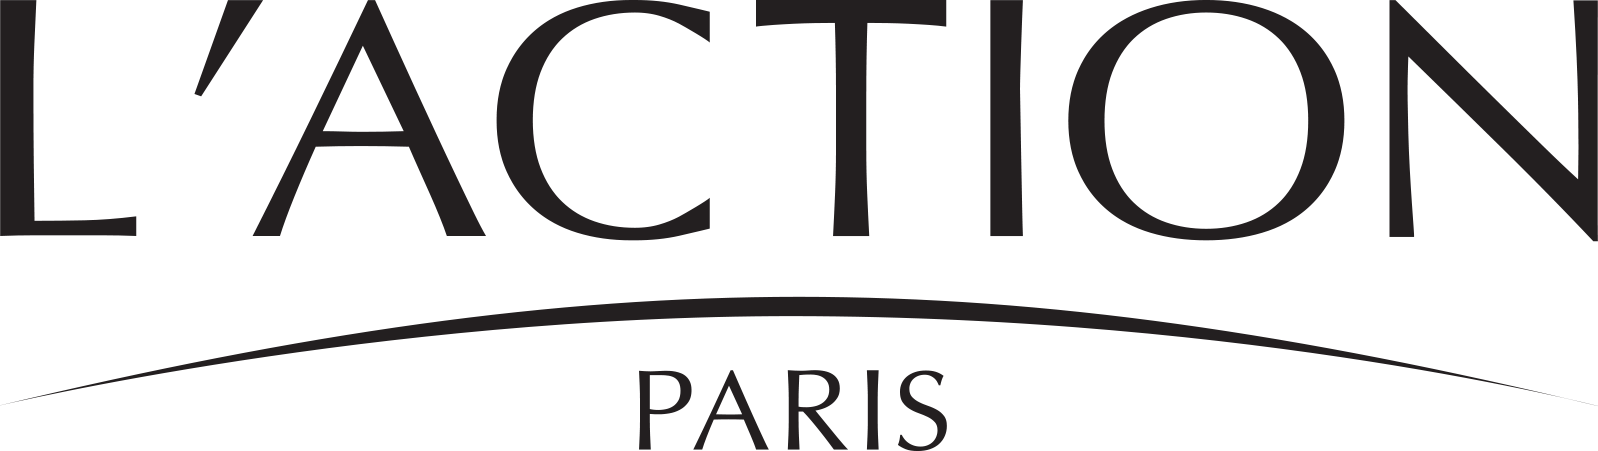 logo L'ACTION PARIS